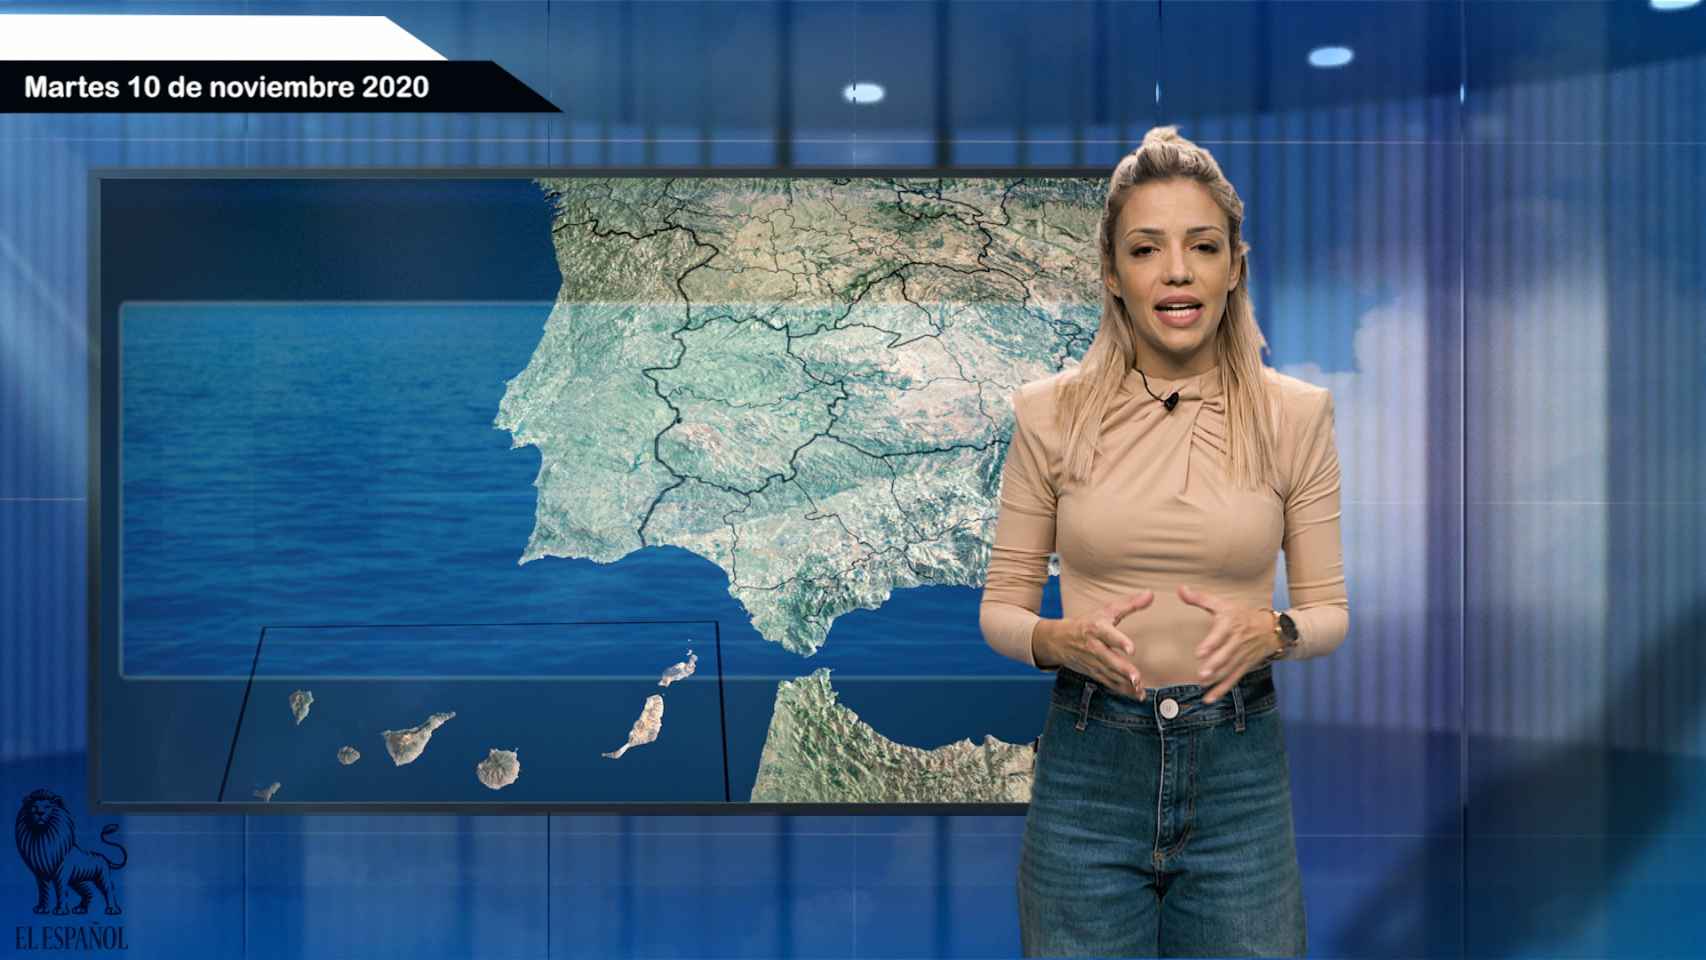 Fotograma del vídeo con el pronóstico del tiempo de El Español.